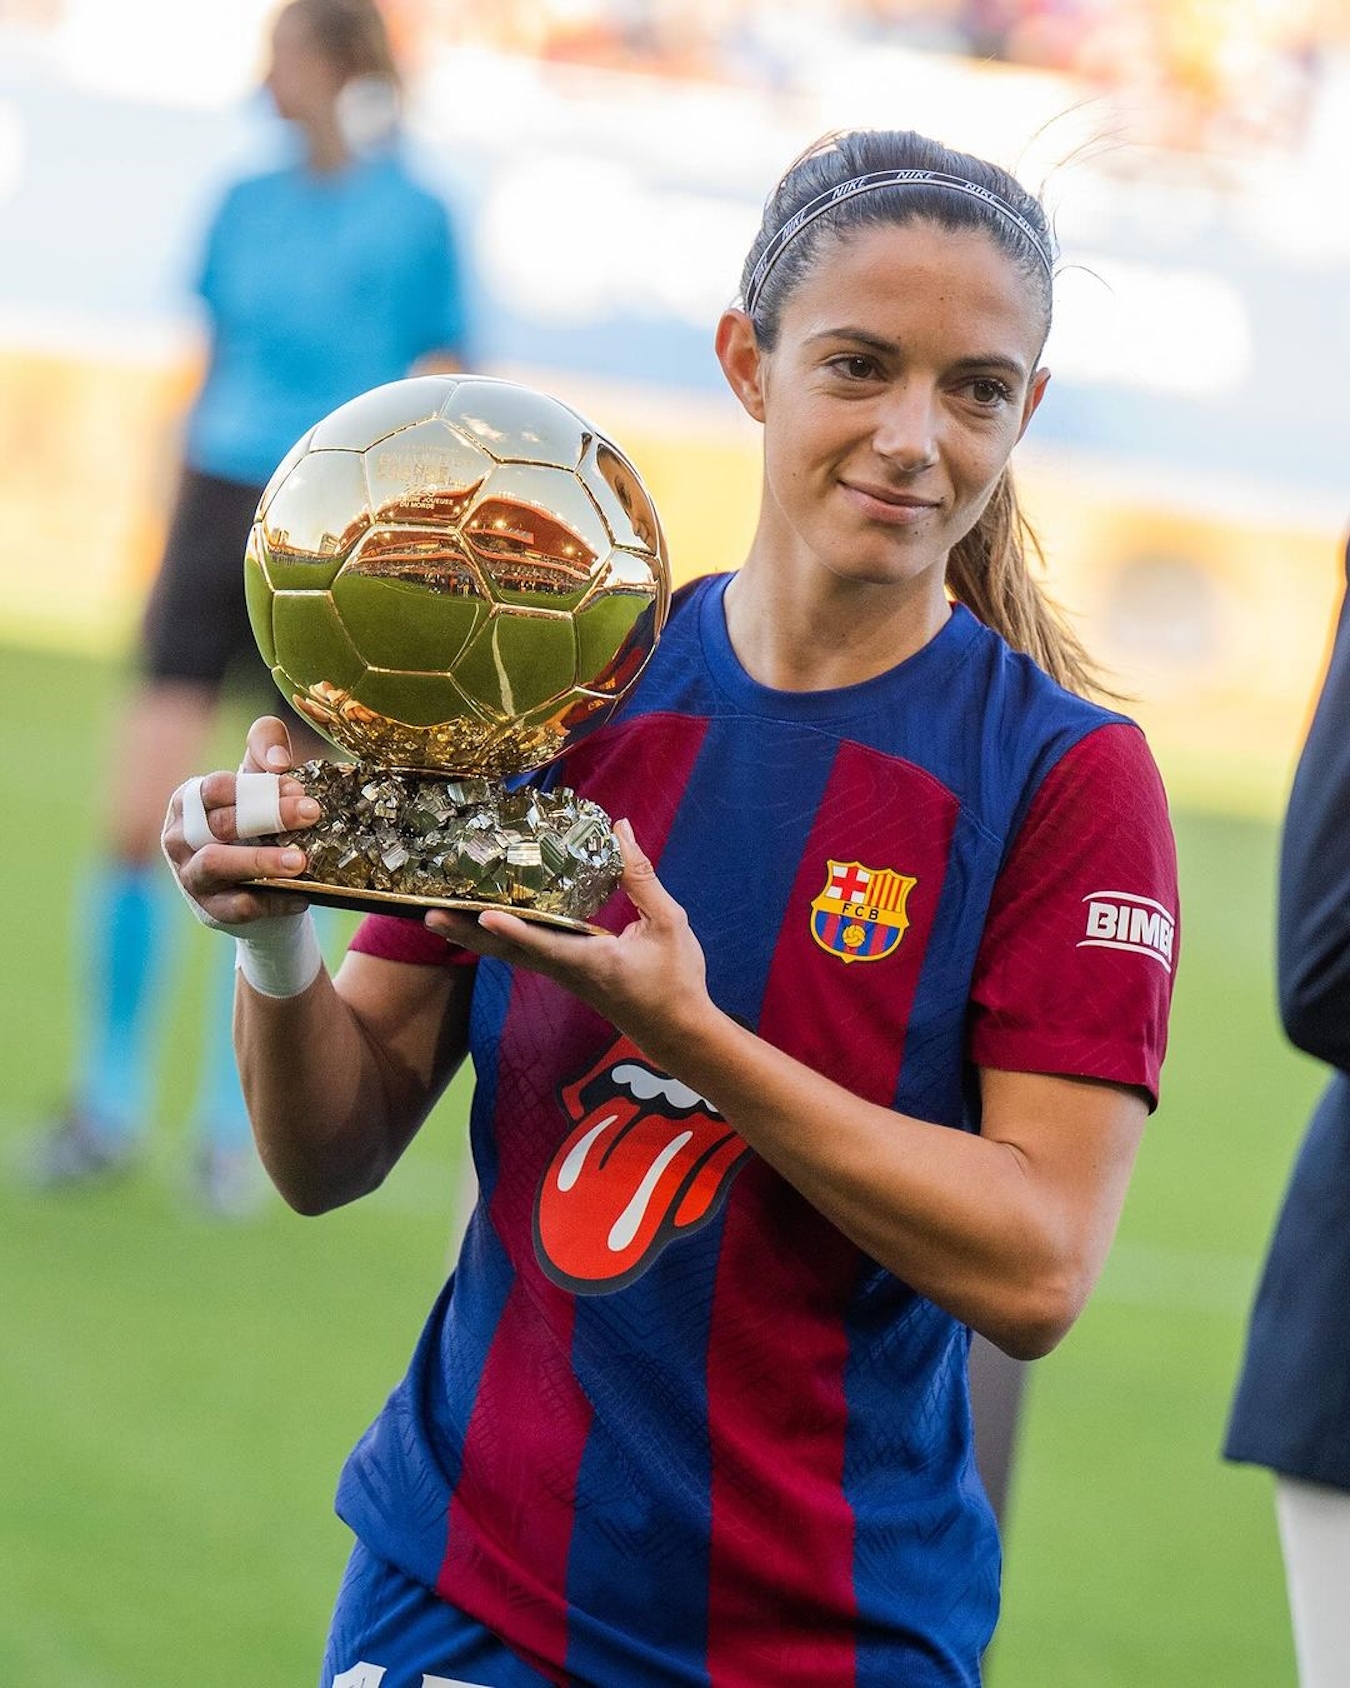 Els premis més ridículs del futbol, atenció al que fan al Barça femení, dantesc